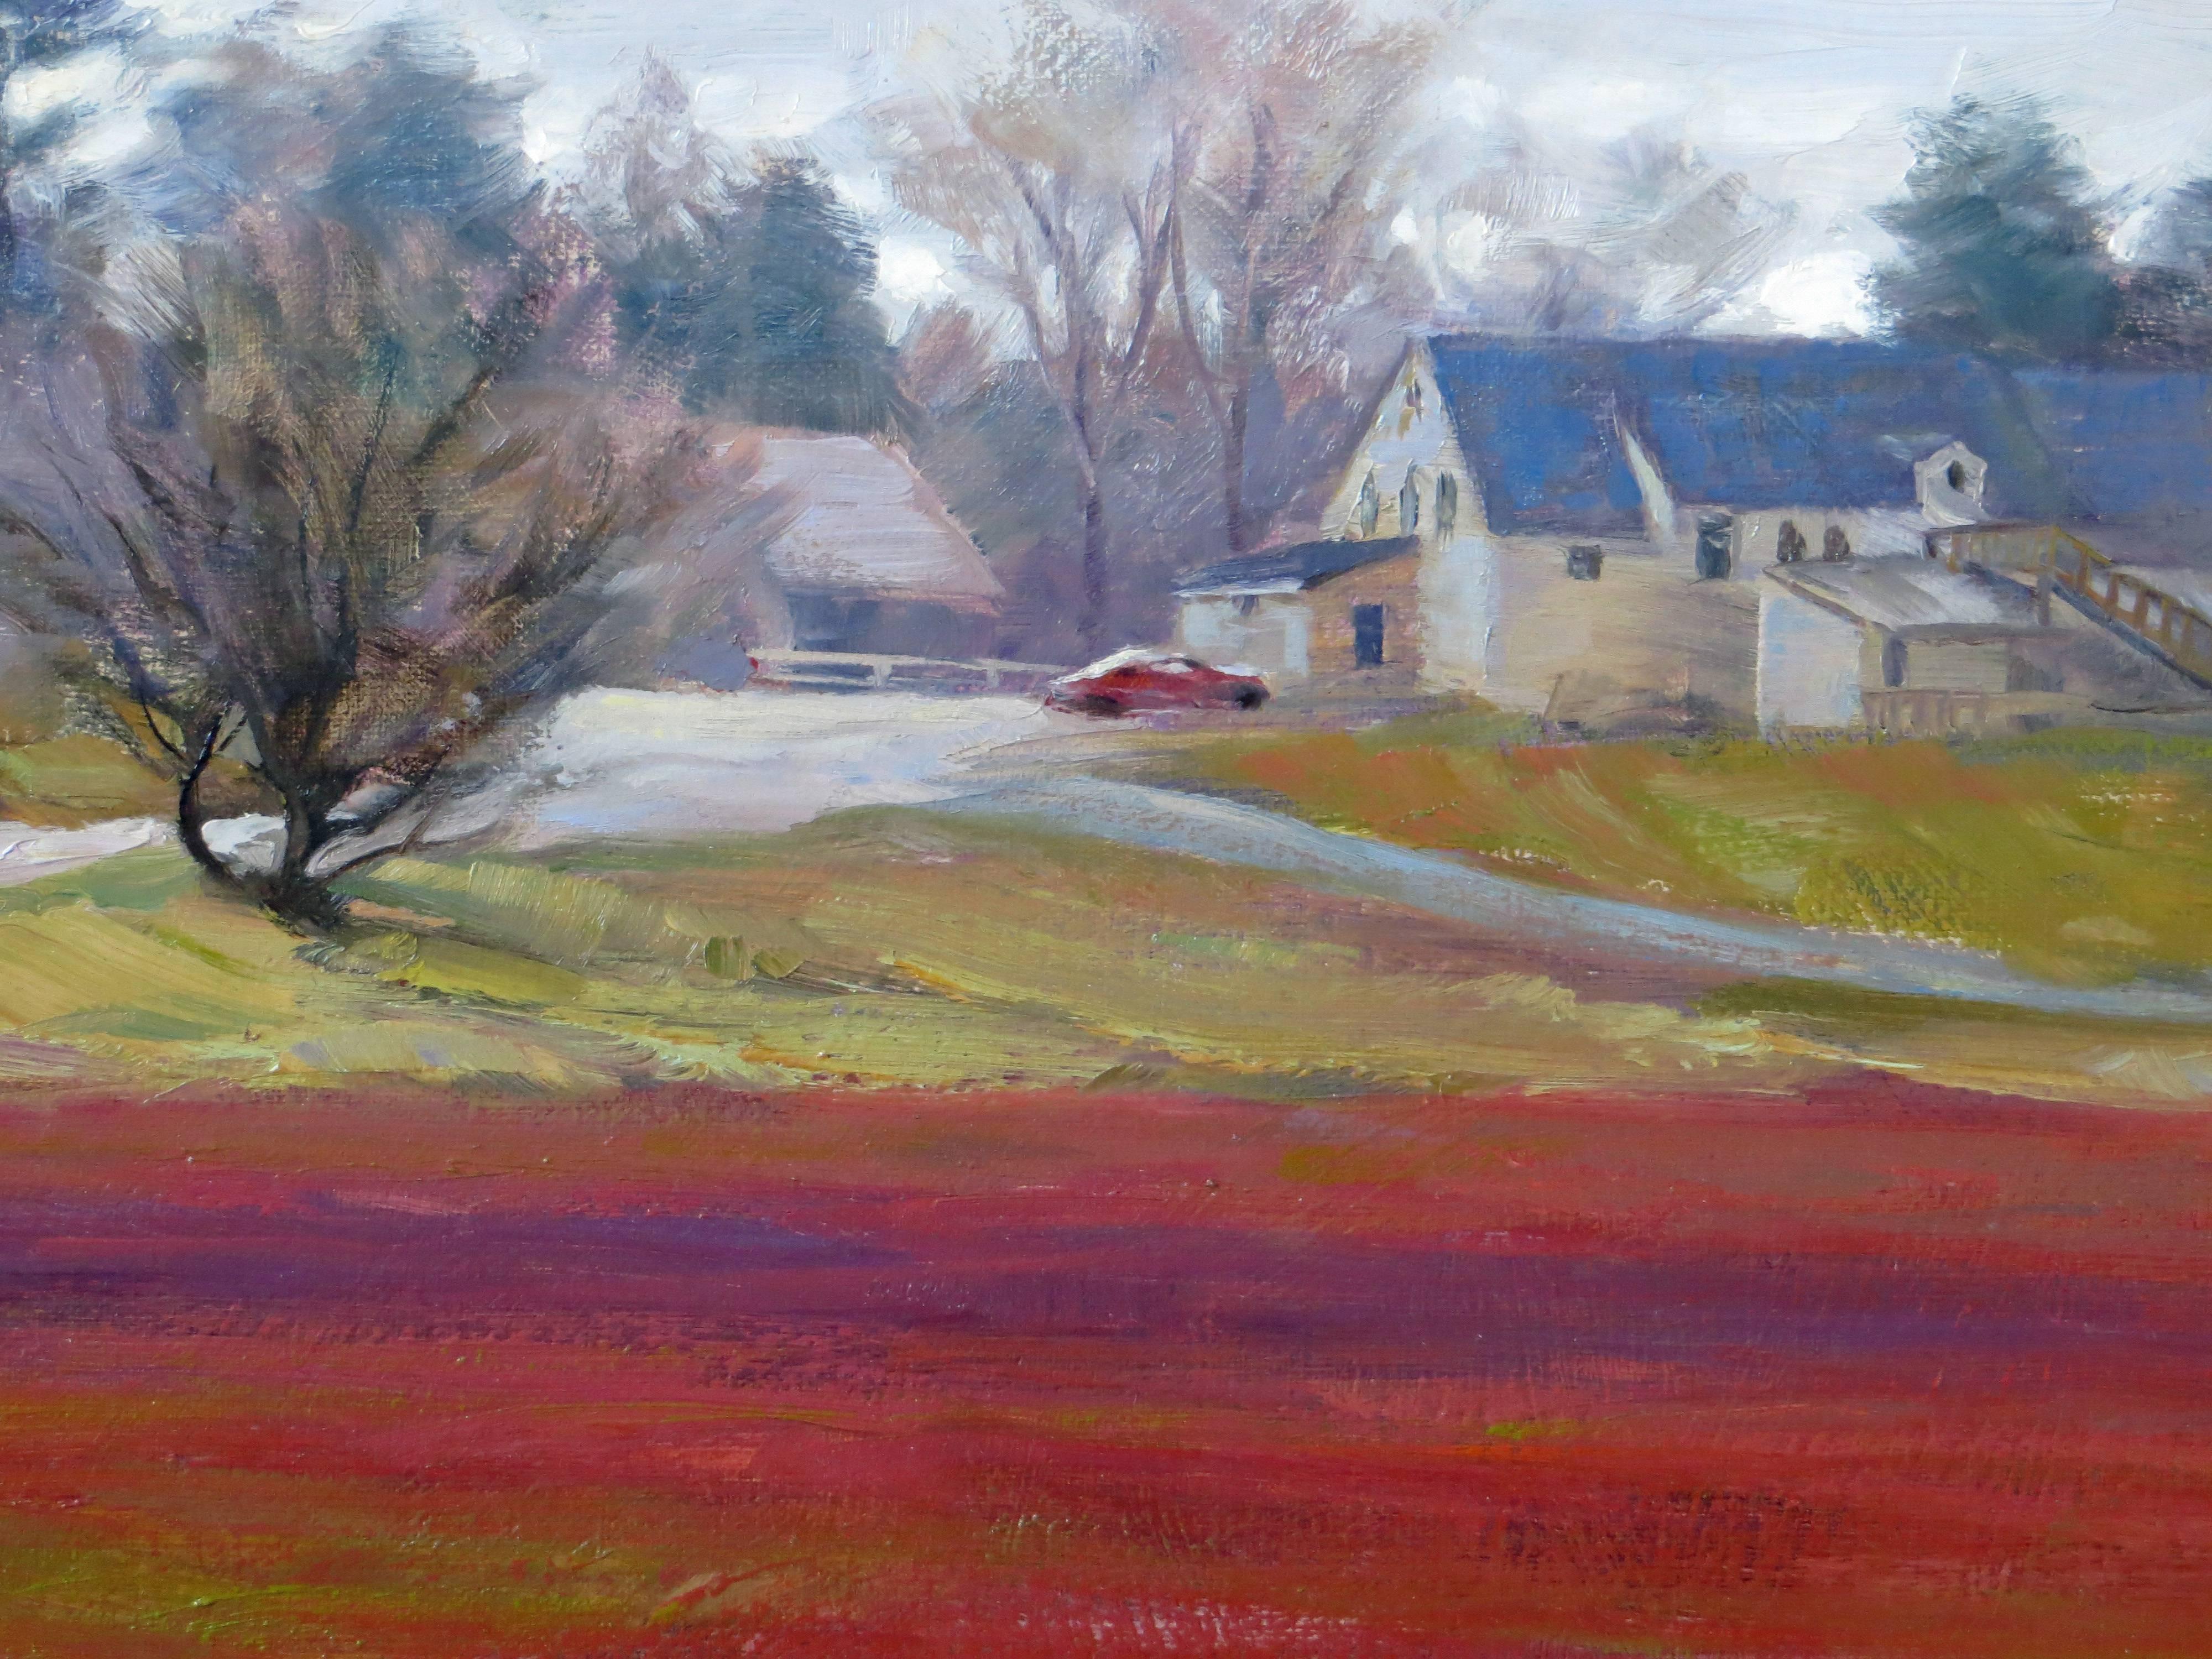 Preiselbeer Bog, Bennet's Store, Duxbury, MA (Braun), Landscape Painting, von Greg Frank Harris